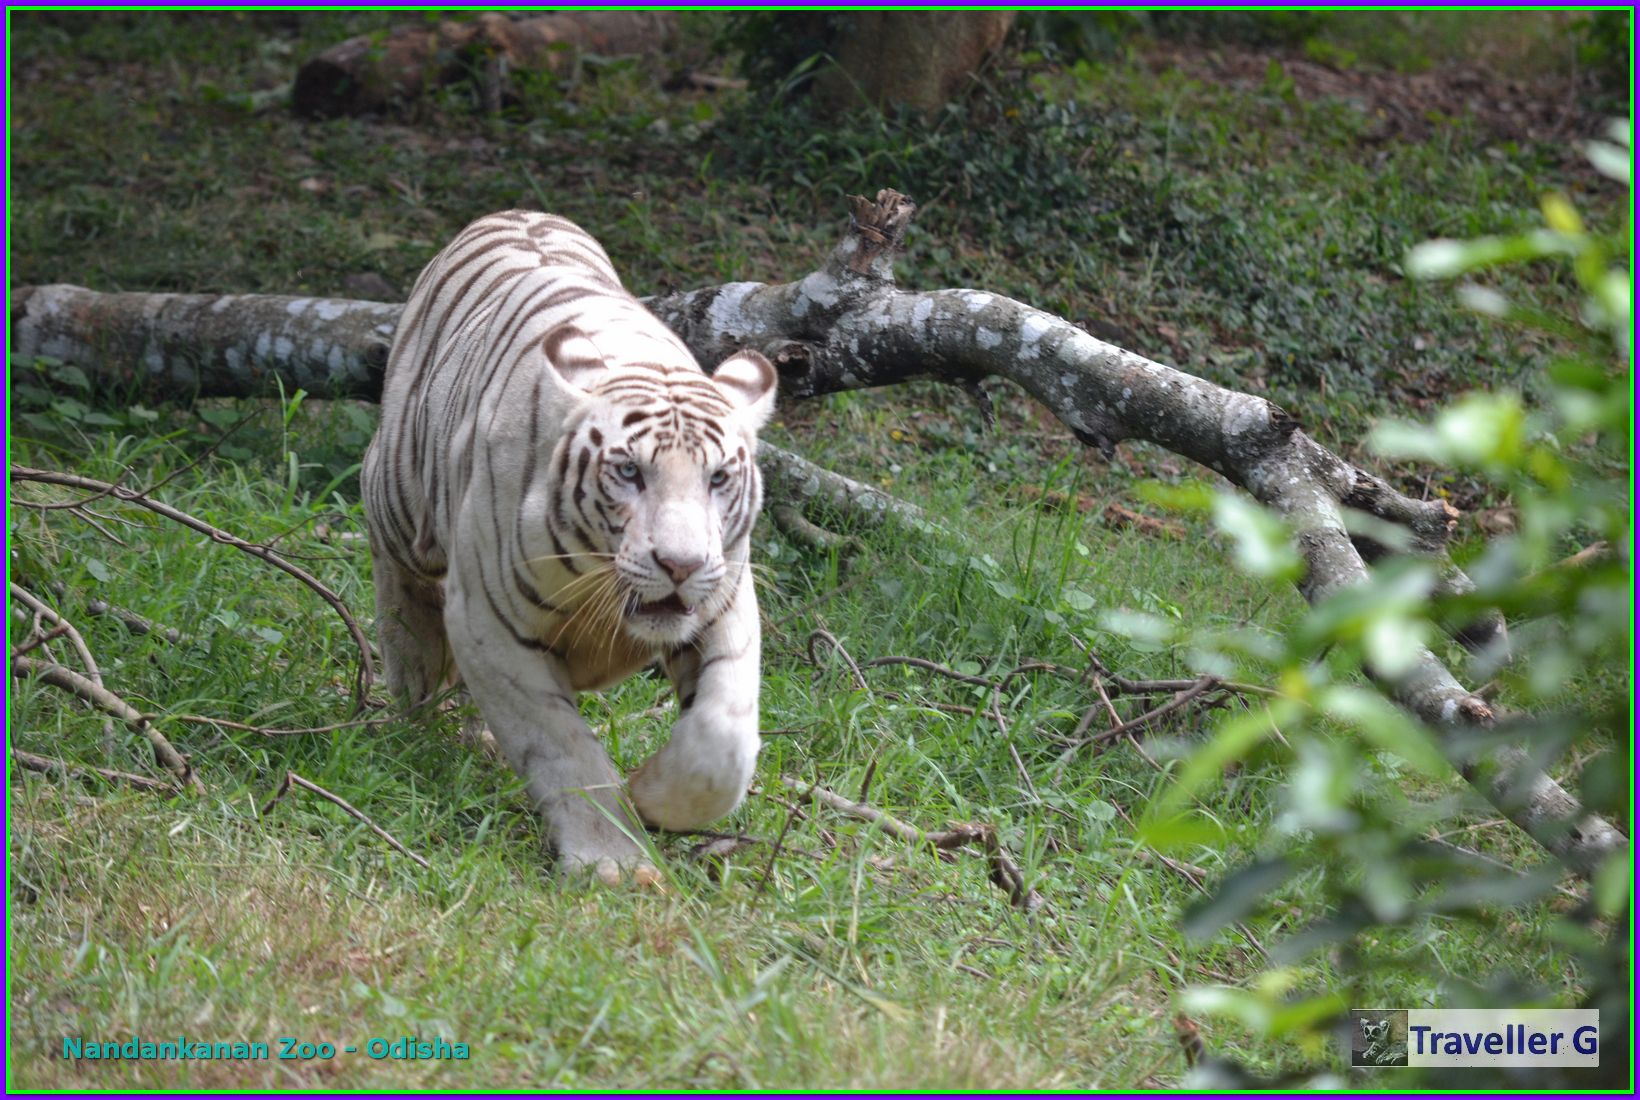 White Tiger from Nanadankanan Zoo, Odisha, India